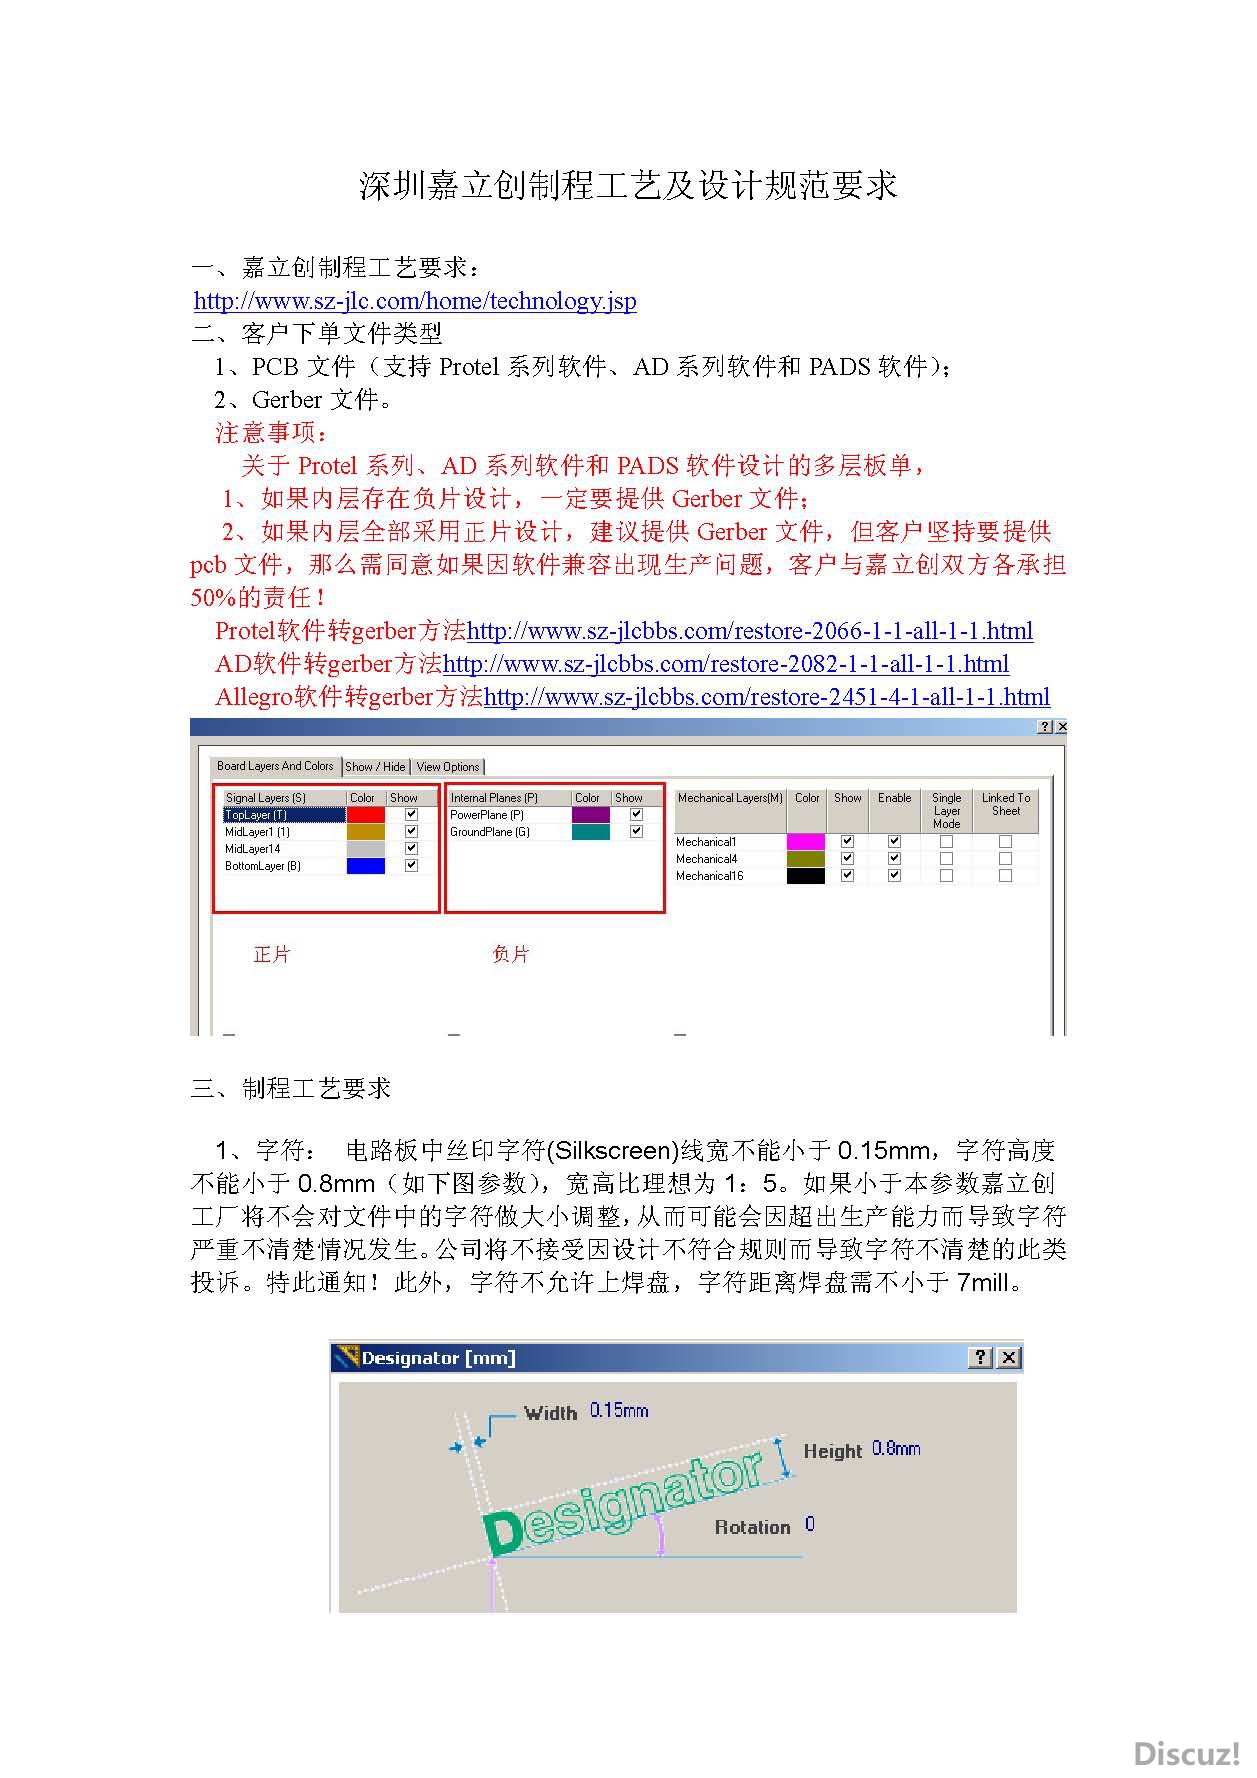 深圳嘉立创制程工艺及设计规范要求_页面_01.jpg